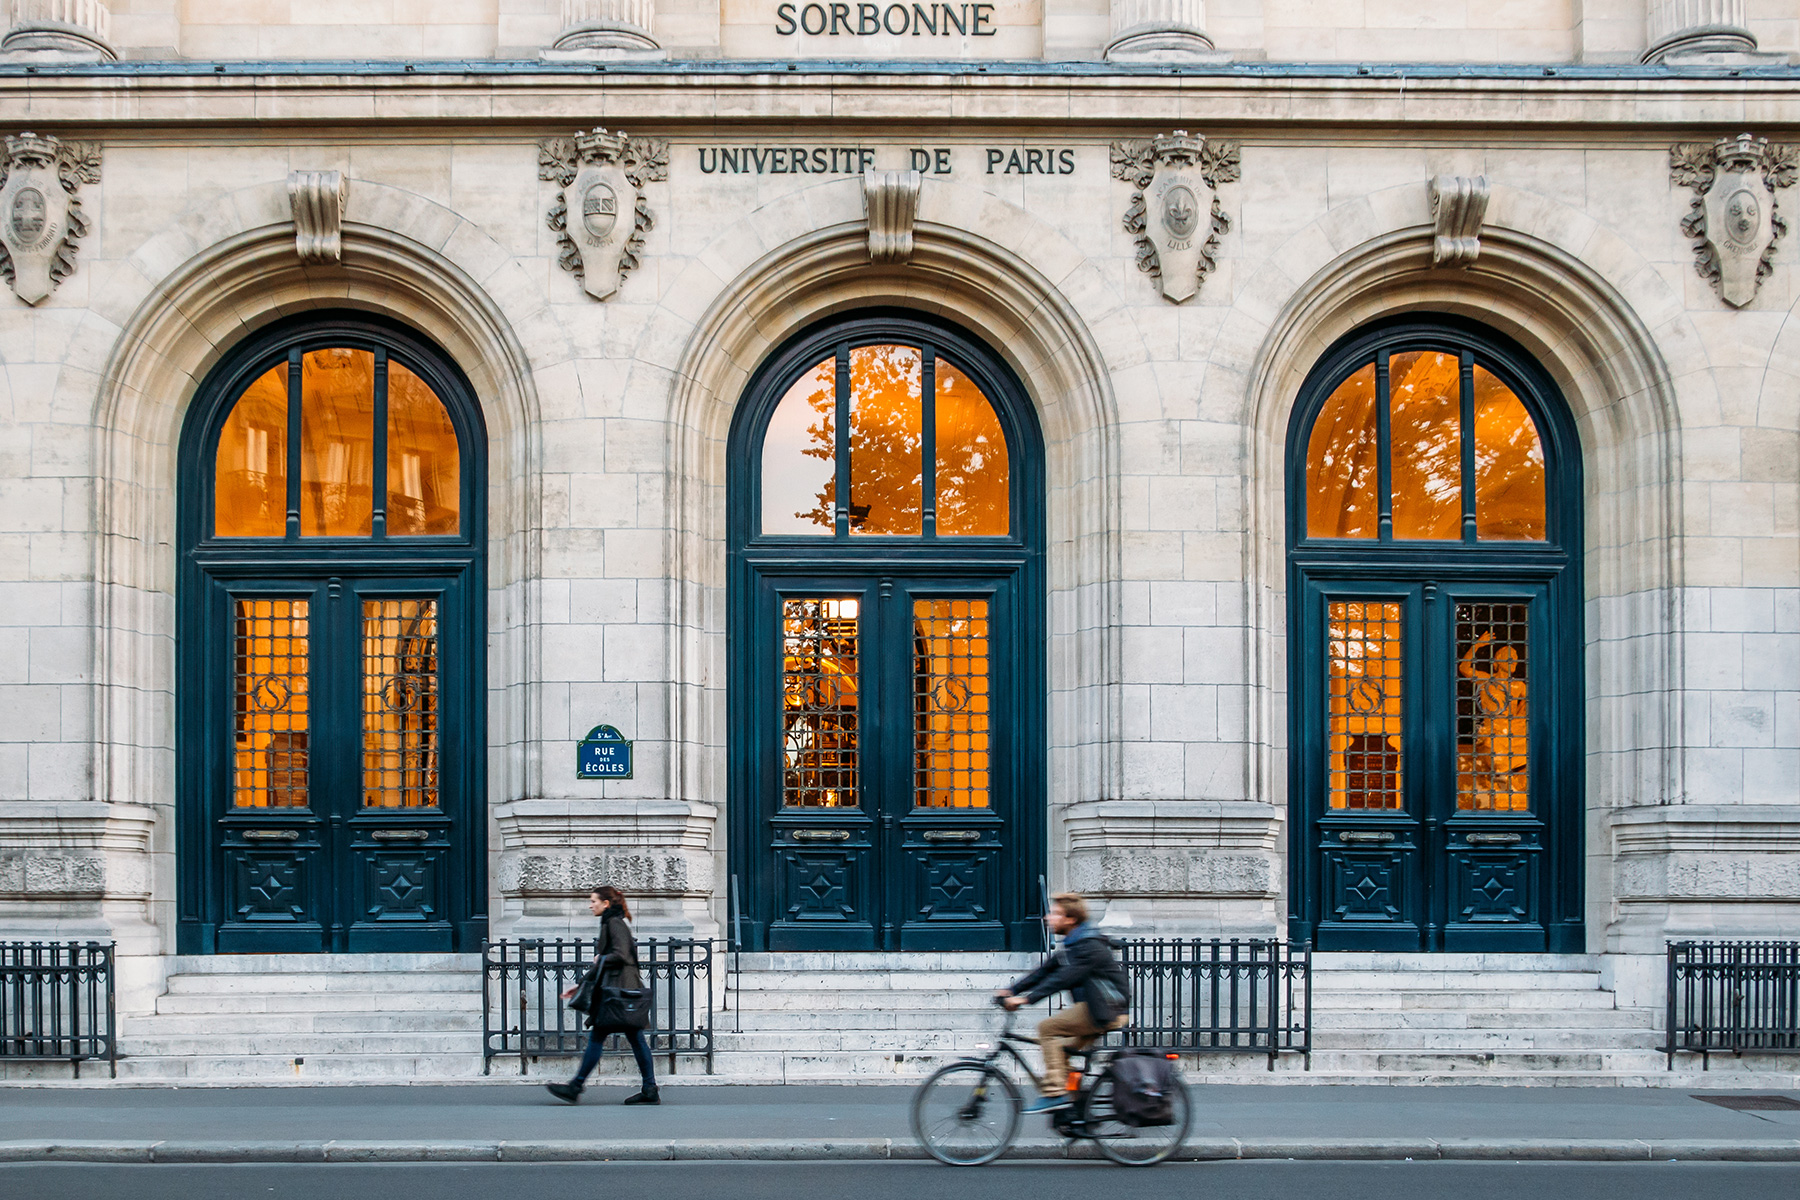 Sorbonne Üniversitesi'nin dış görünüşü, yanından geçen ve bisiklete binen insanlar